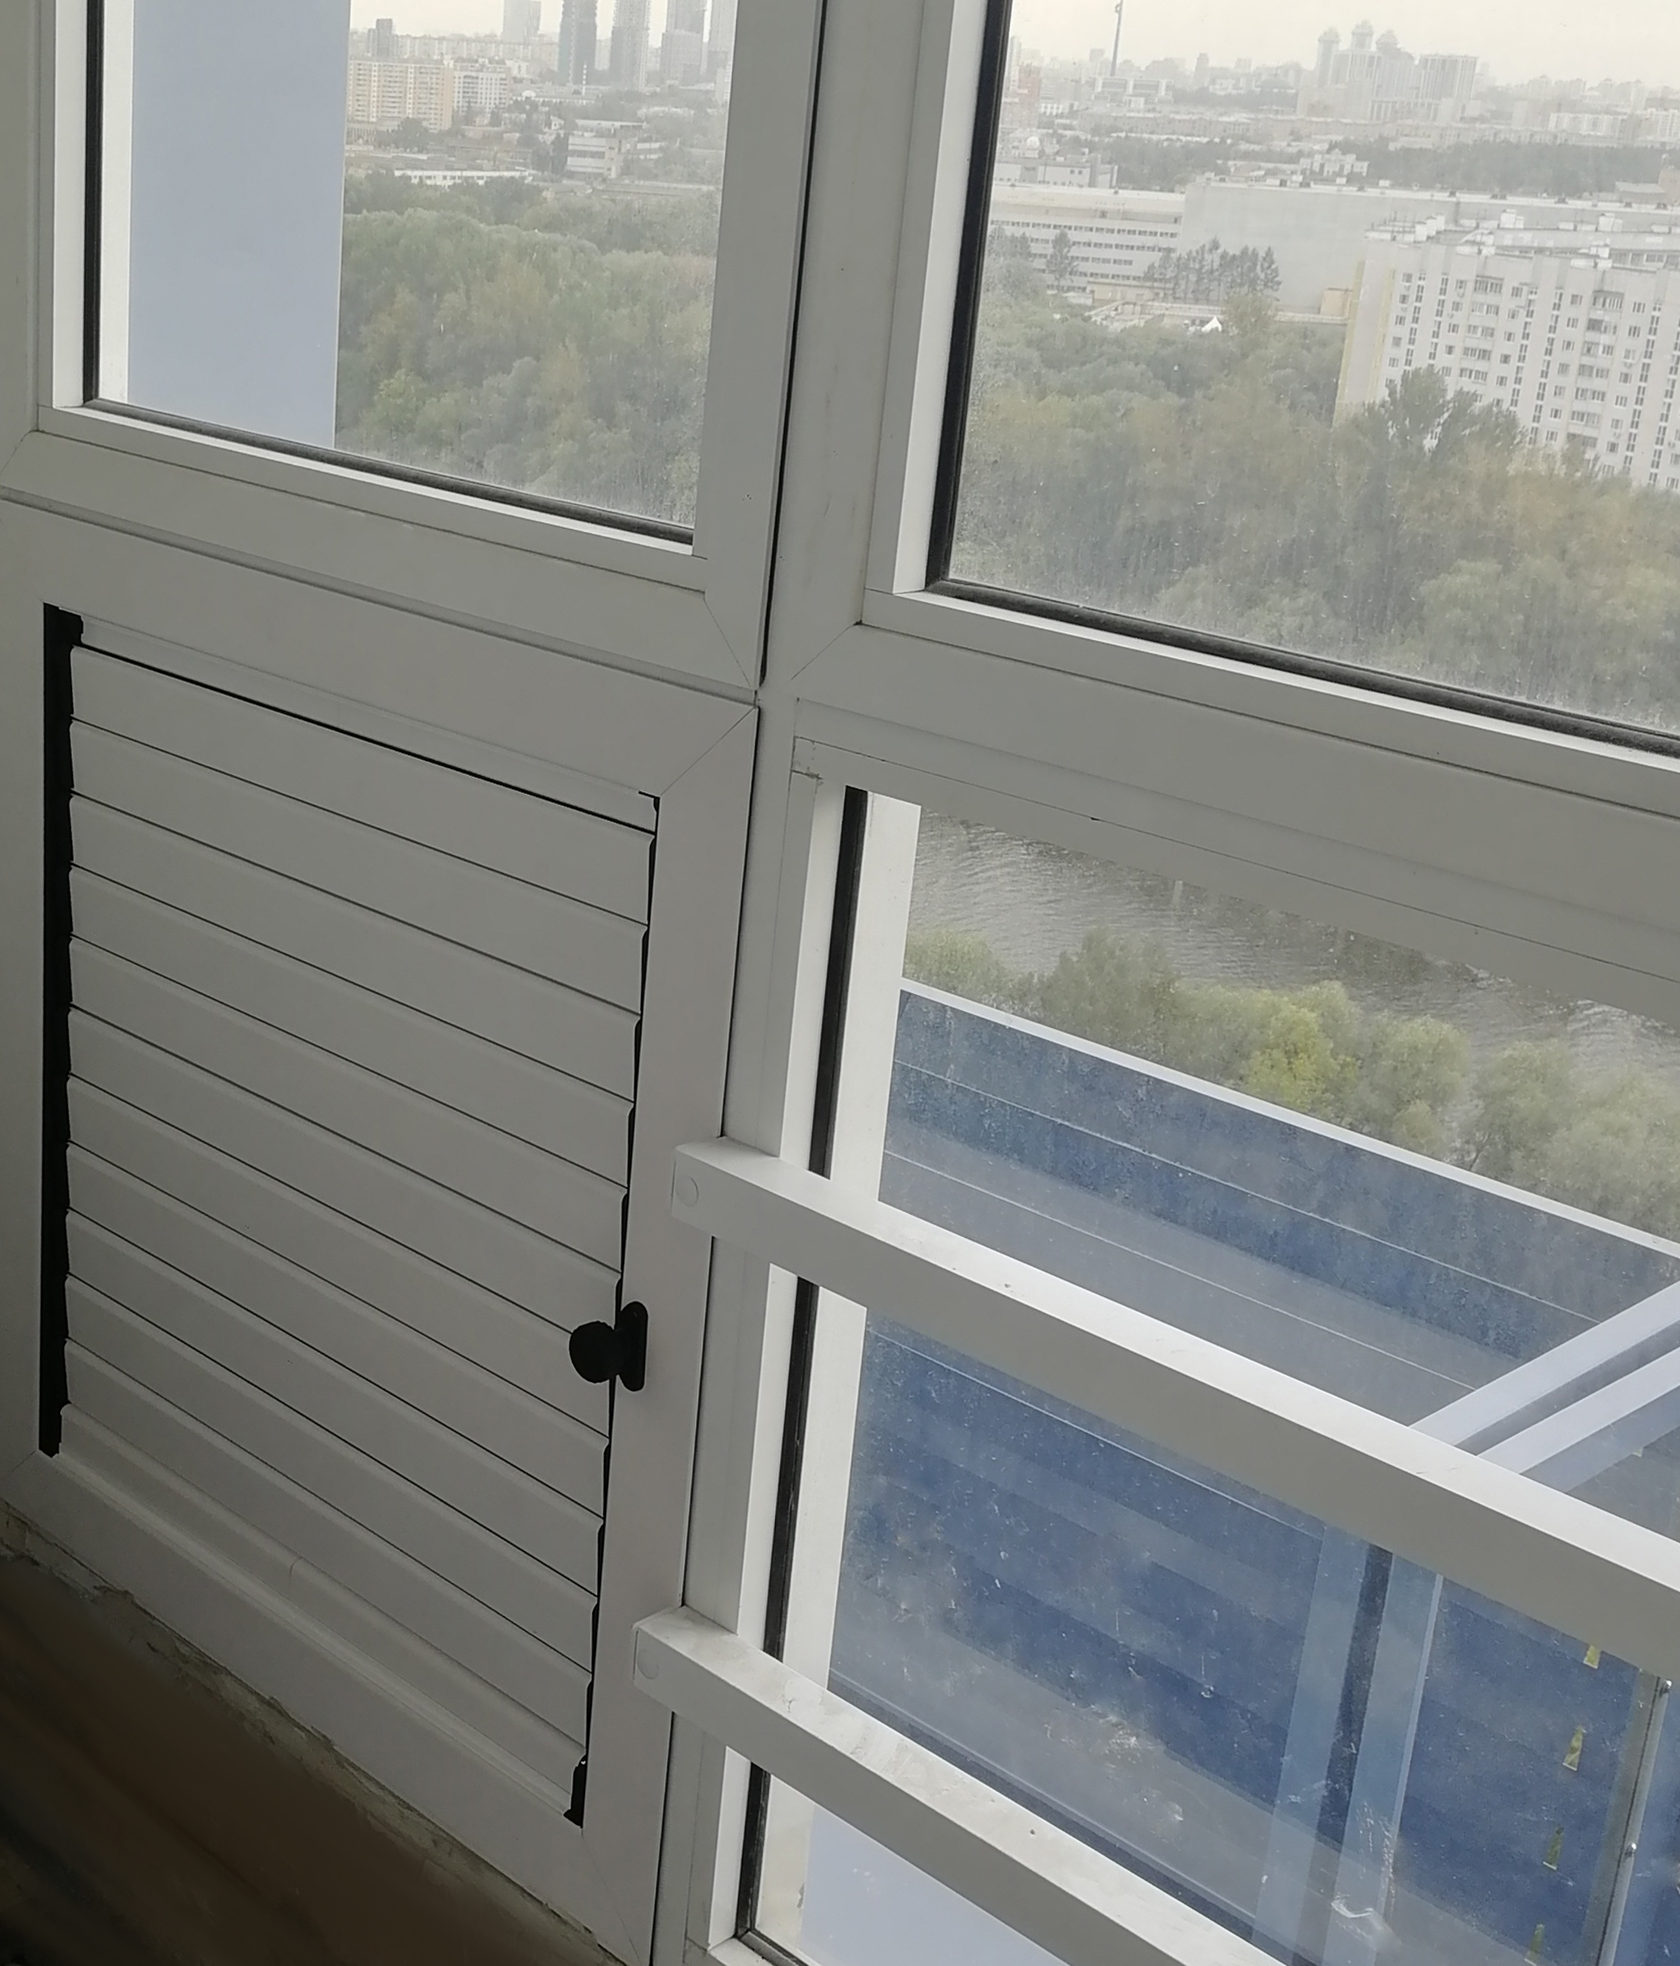 Вентиляционная решетка с регулировкой и встроенной москитной сеткой. Установка на балкон вместо решетки от застройщика. Теперь решетку можно закрыть!